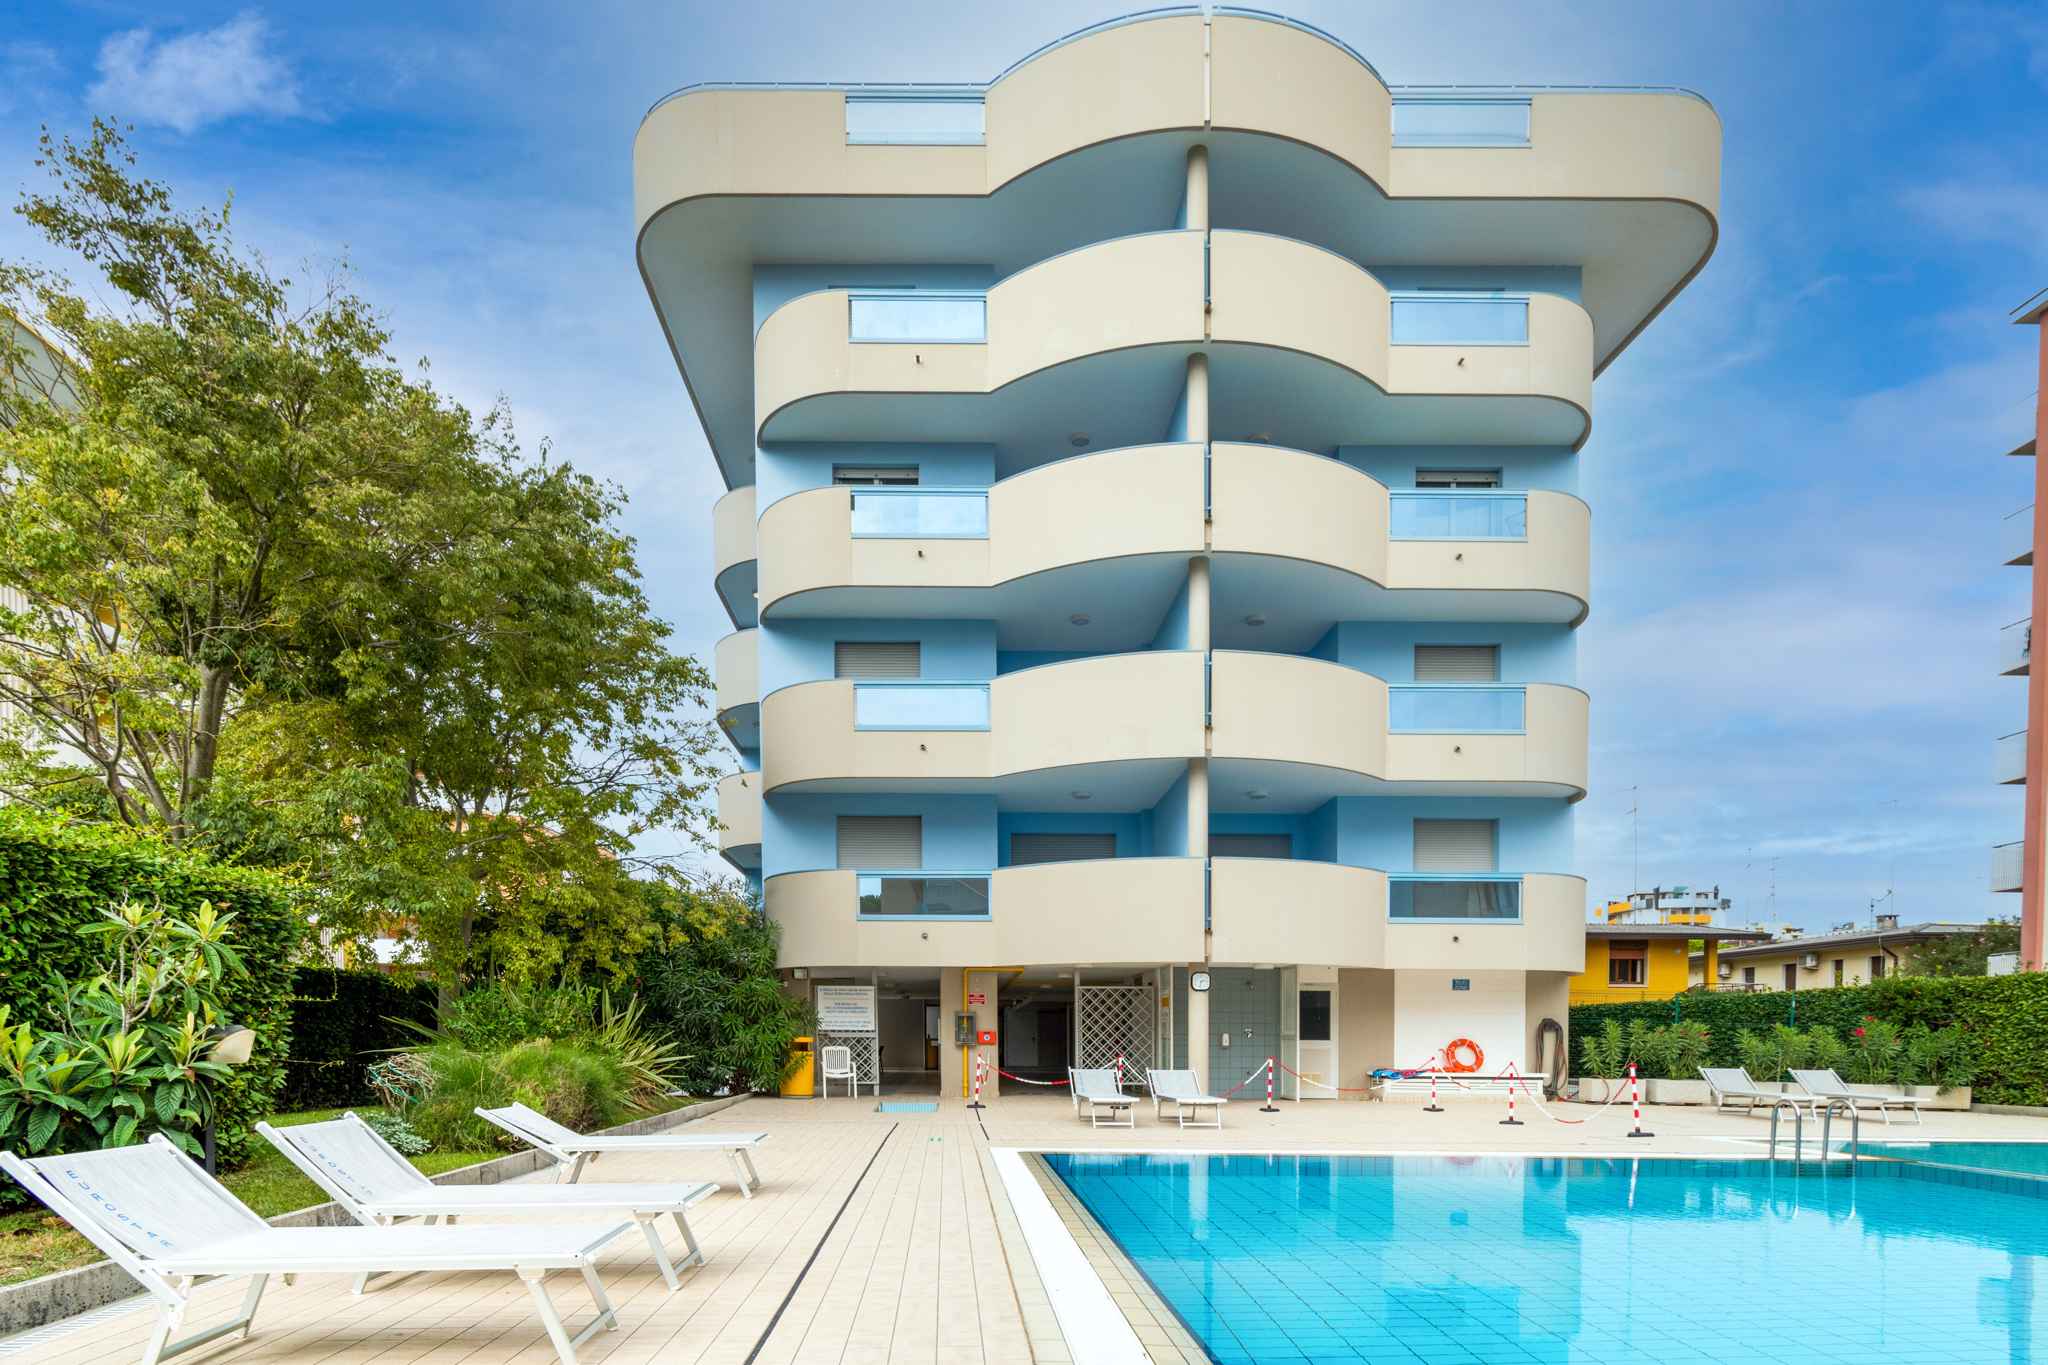 Ferienwohnung in einem Residence mit Pool  in Europa